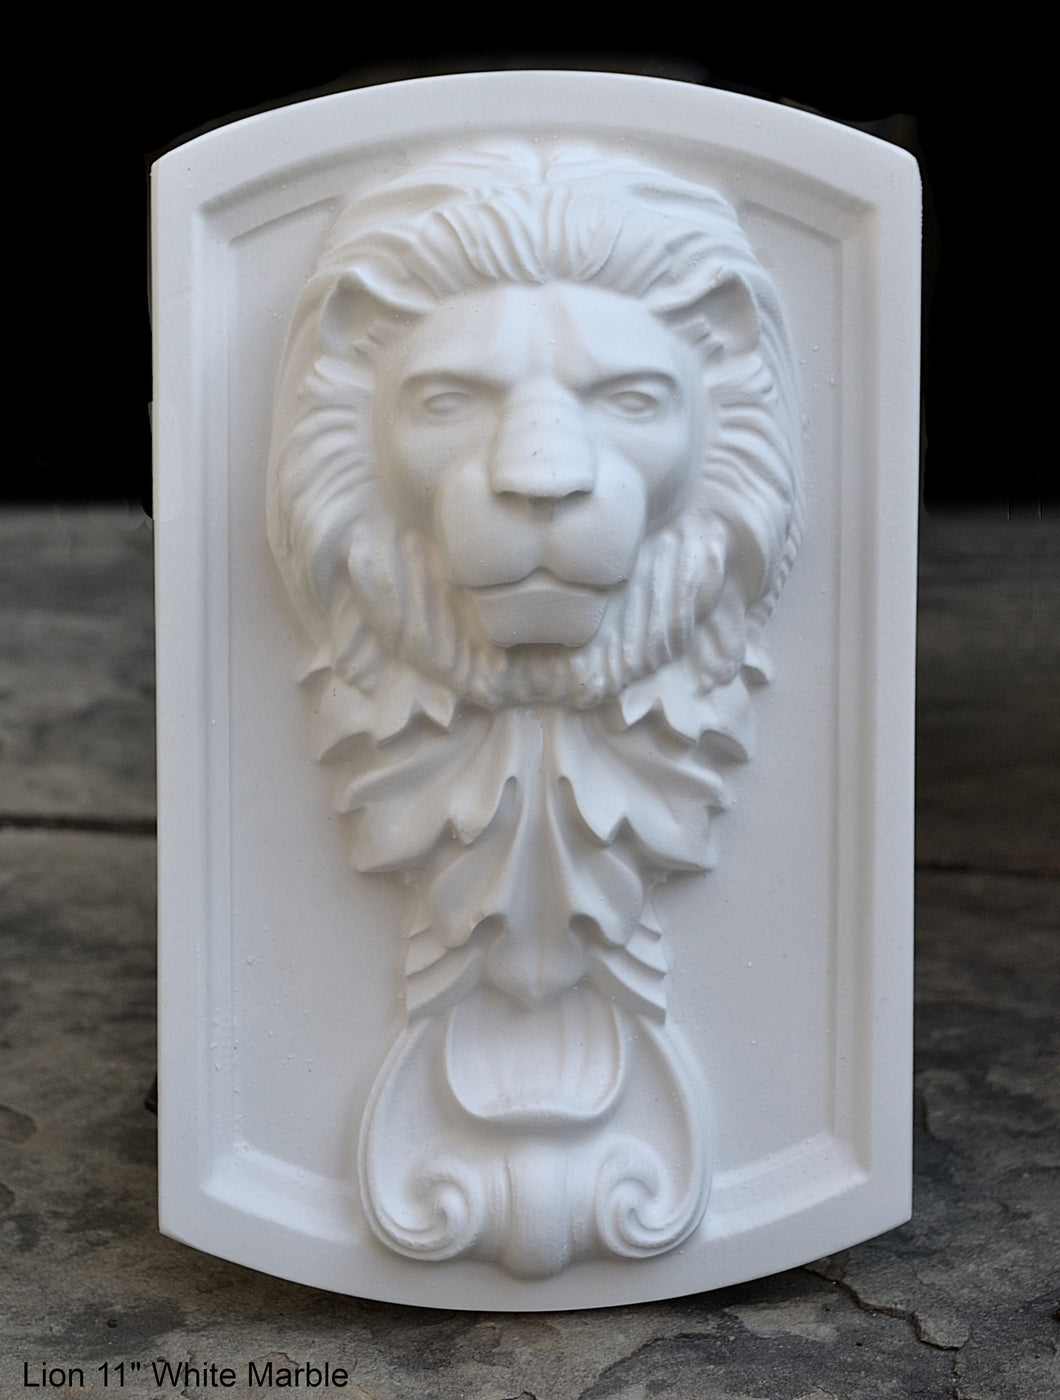 Lion wall Sculpture plaque 11